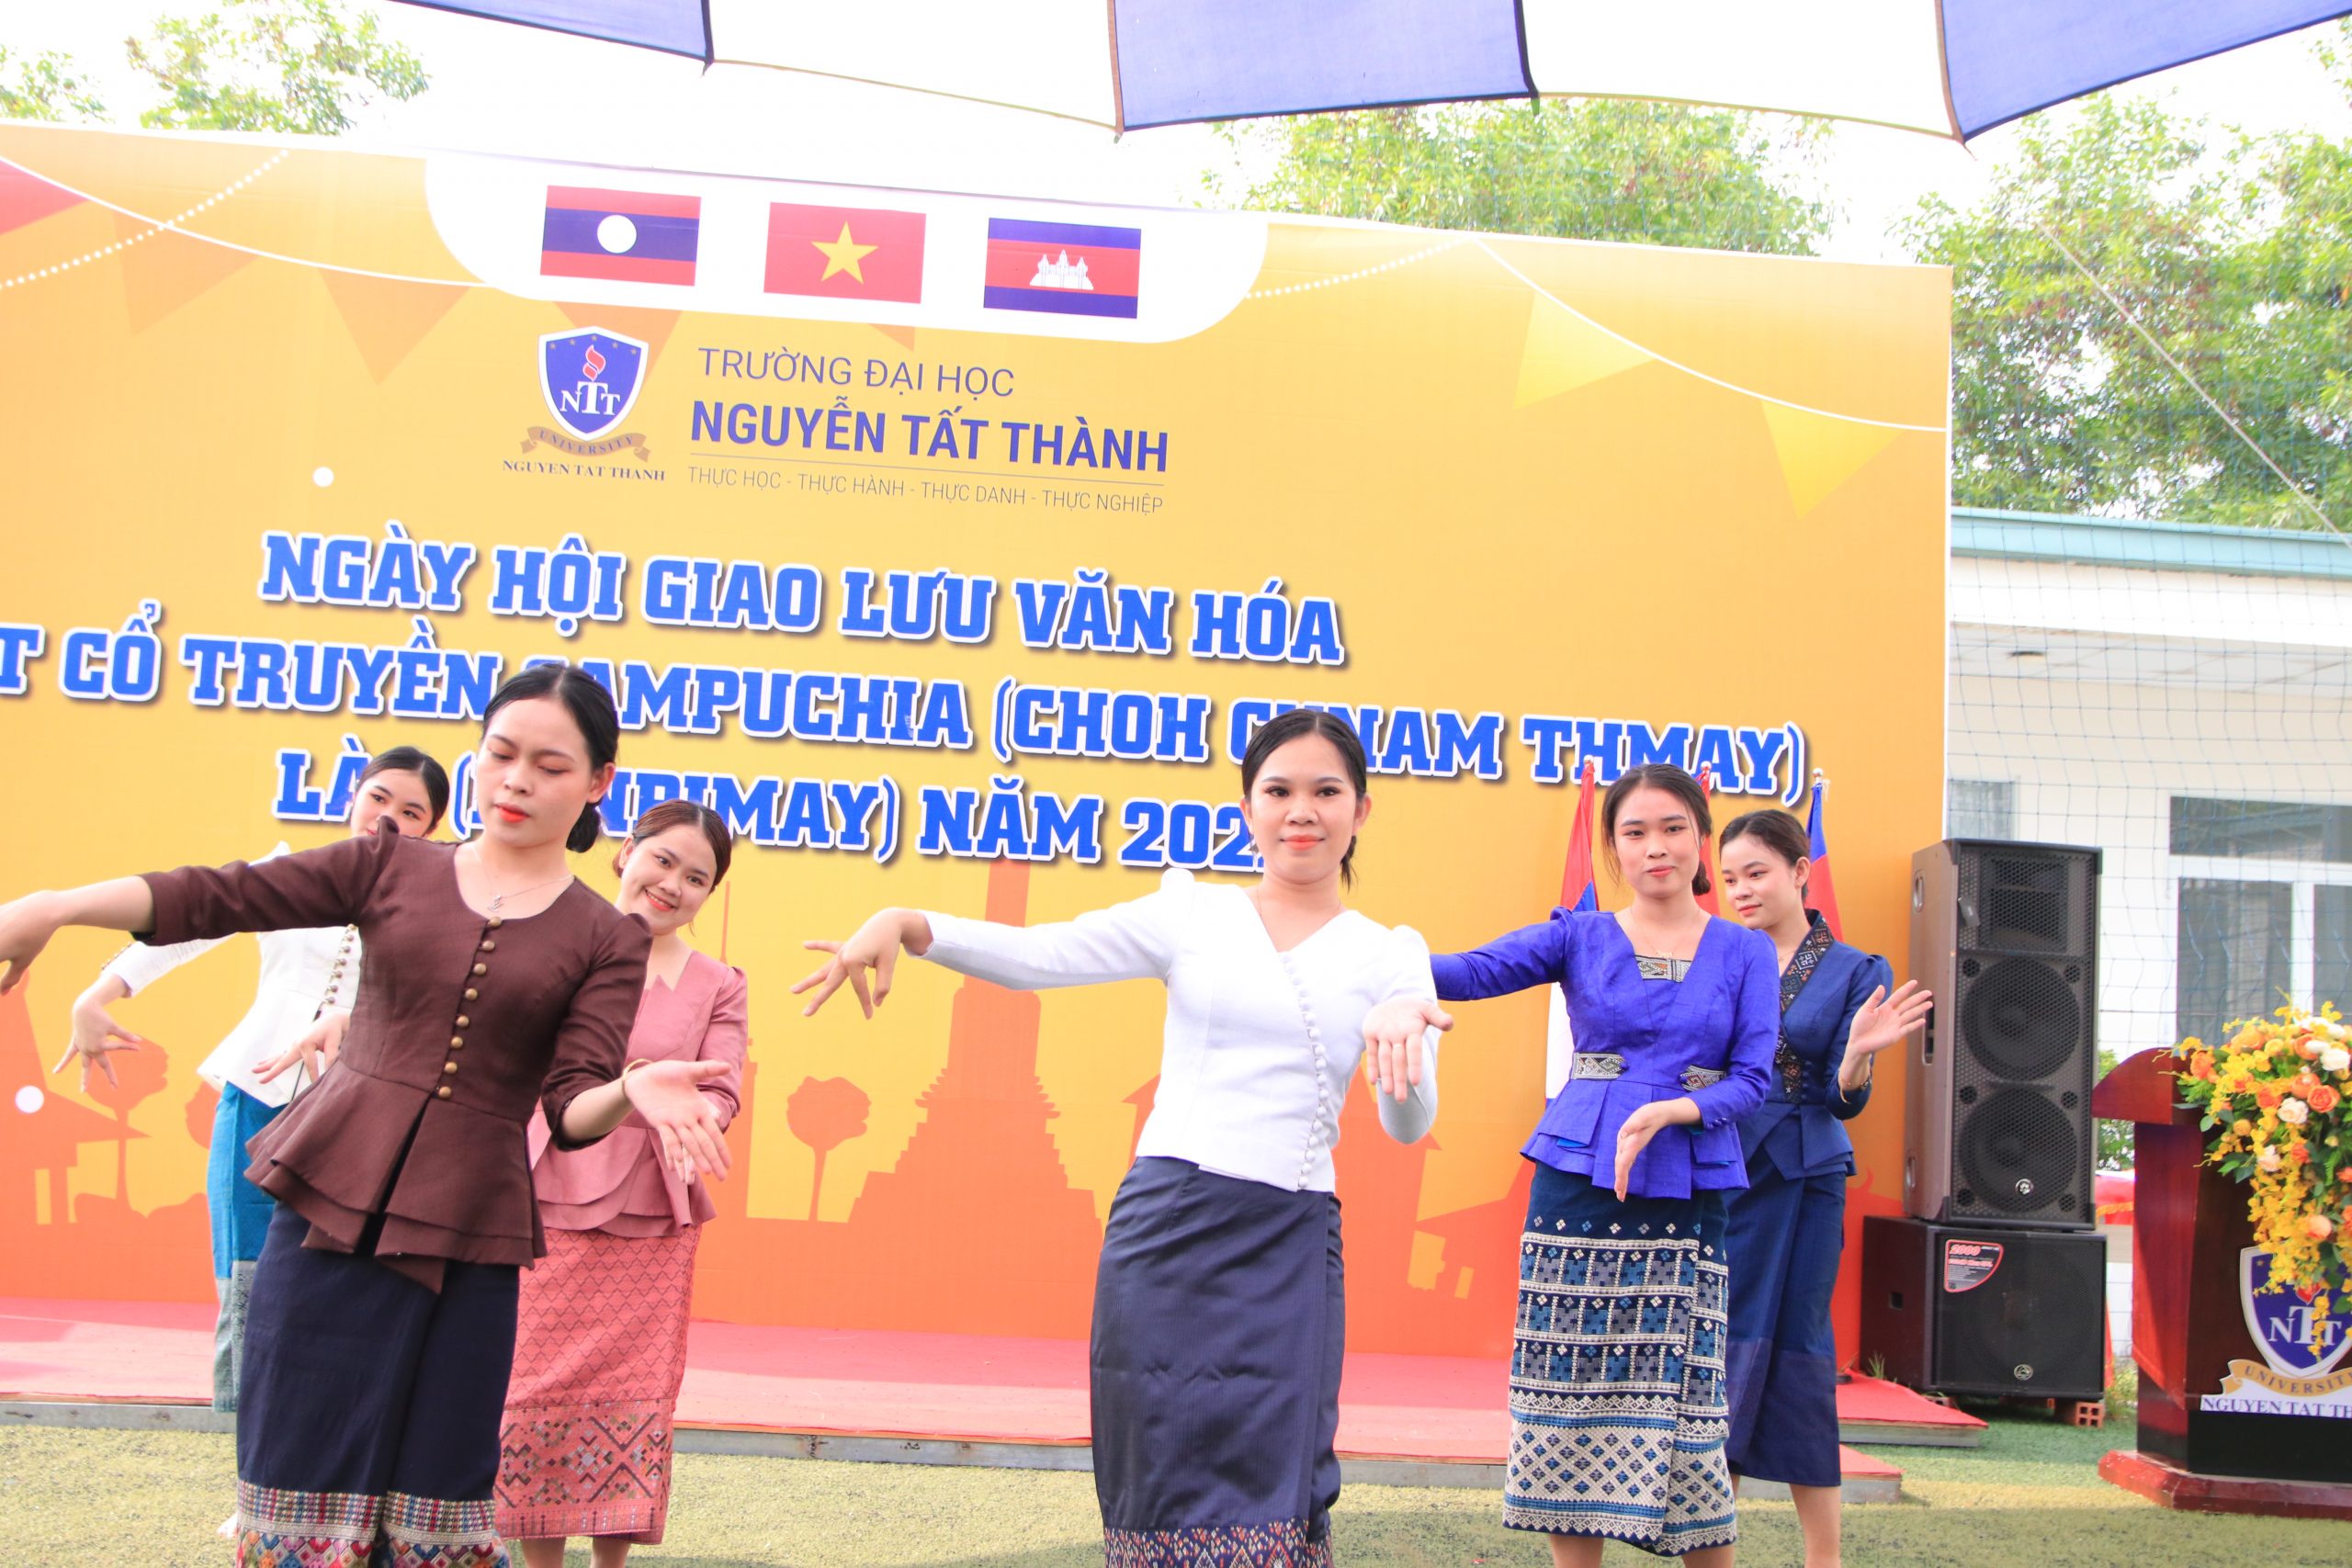 Các bạn sinh viên K20 Lào đang múa bài Song phon py may (chúc mừng ngày Tết)